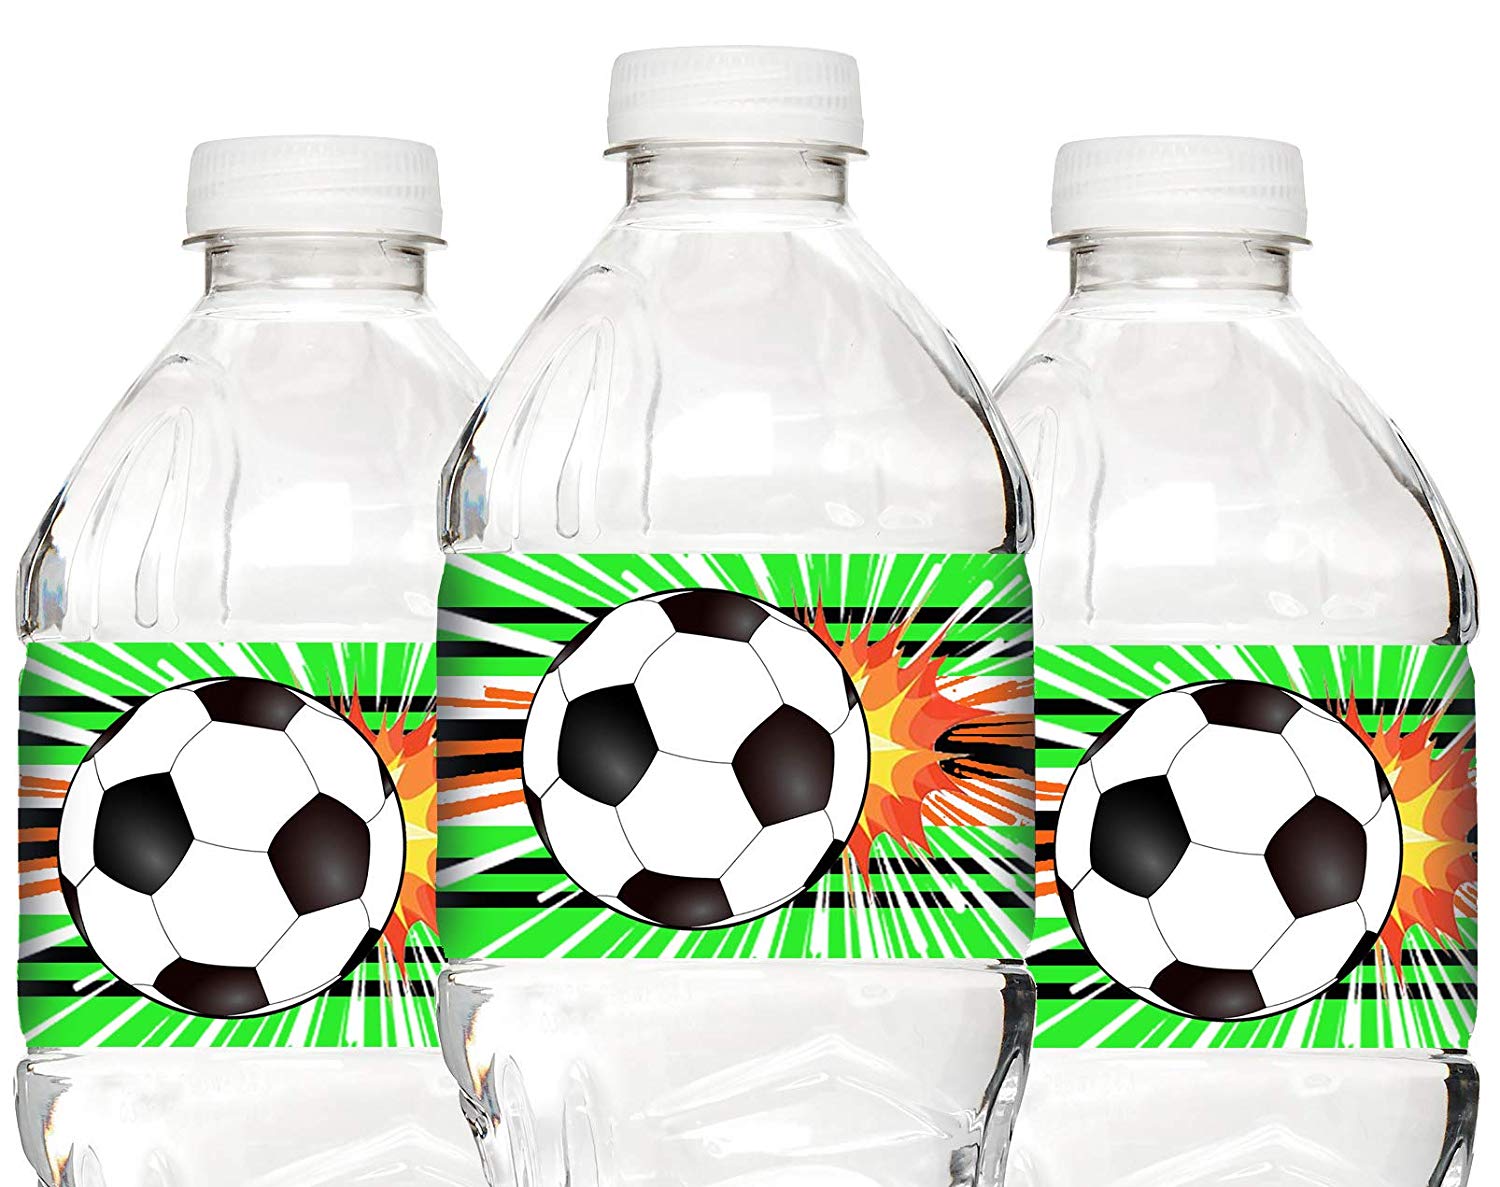 https://poppartiesink.com/wp-content/uploads/imported/Soccer-Waterproof-Bottle-Labels-20-Bottle-Labels-Soccer-Party-Decorations-Soccer-Party-Supplies-Bottle-B07N79HYZ3.jpg